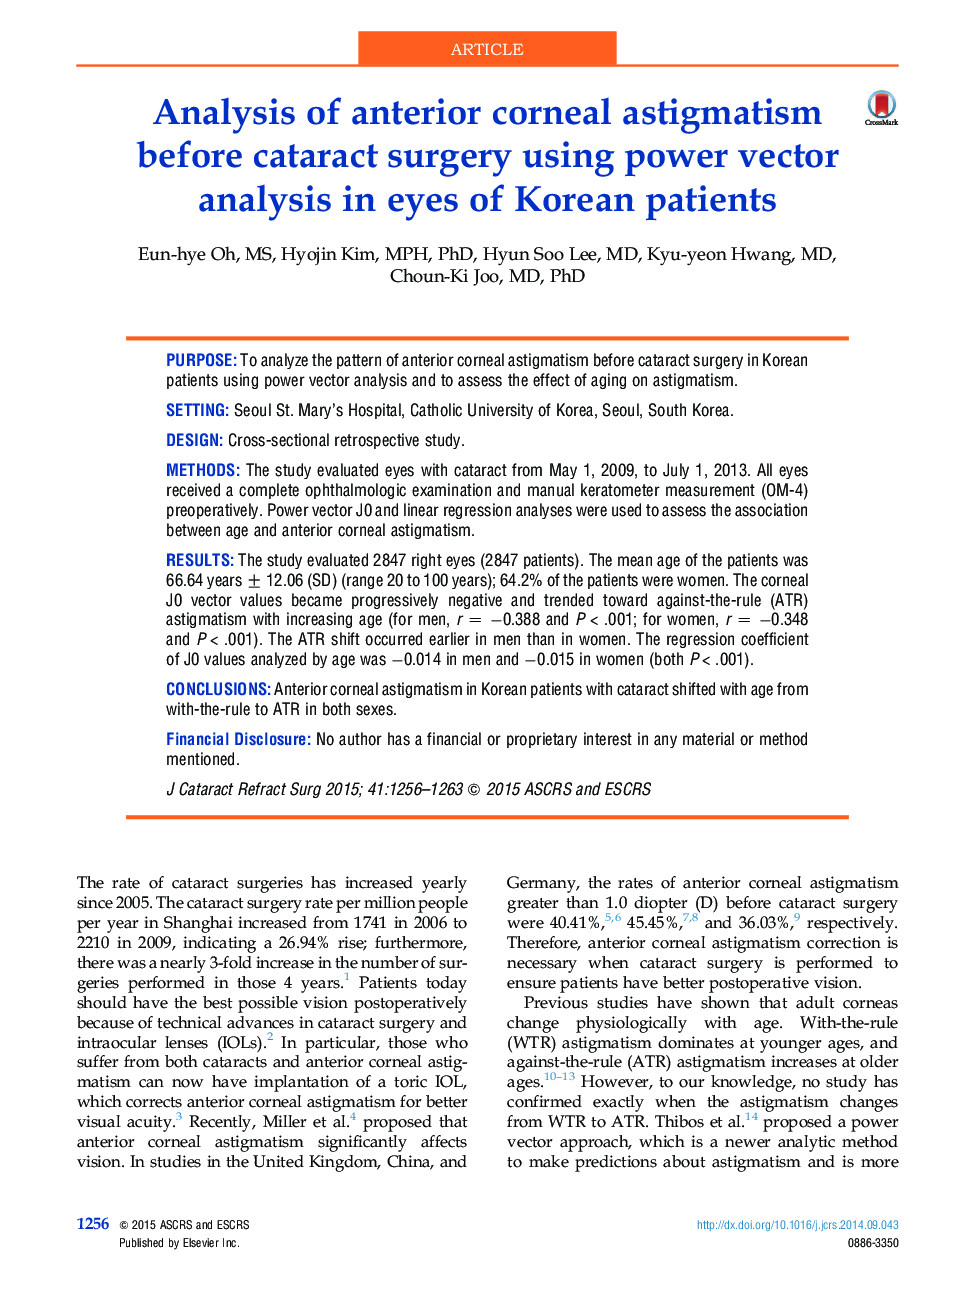 تجزیه و تحلیل آستیگماتیسم پیشانی قرنیه قبل از عمل جراحی کاتاراکت با استفاده از تحلیل بردار قدرت در چشم بیماران کره ای 